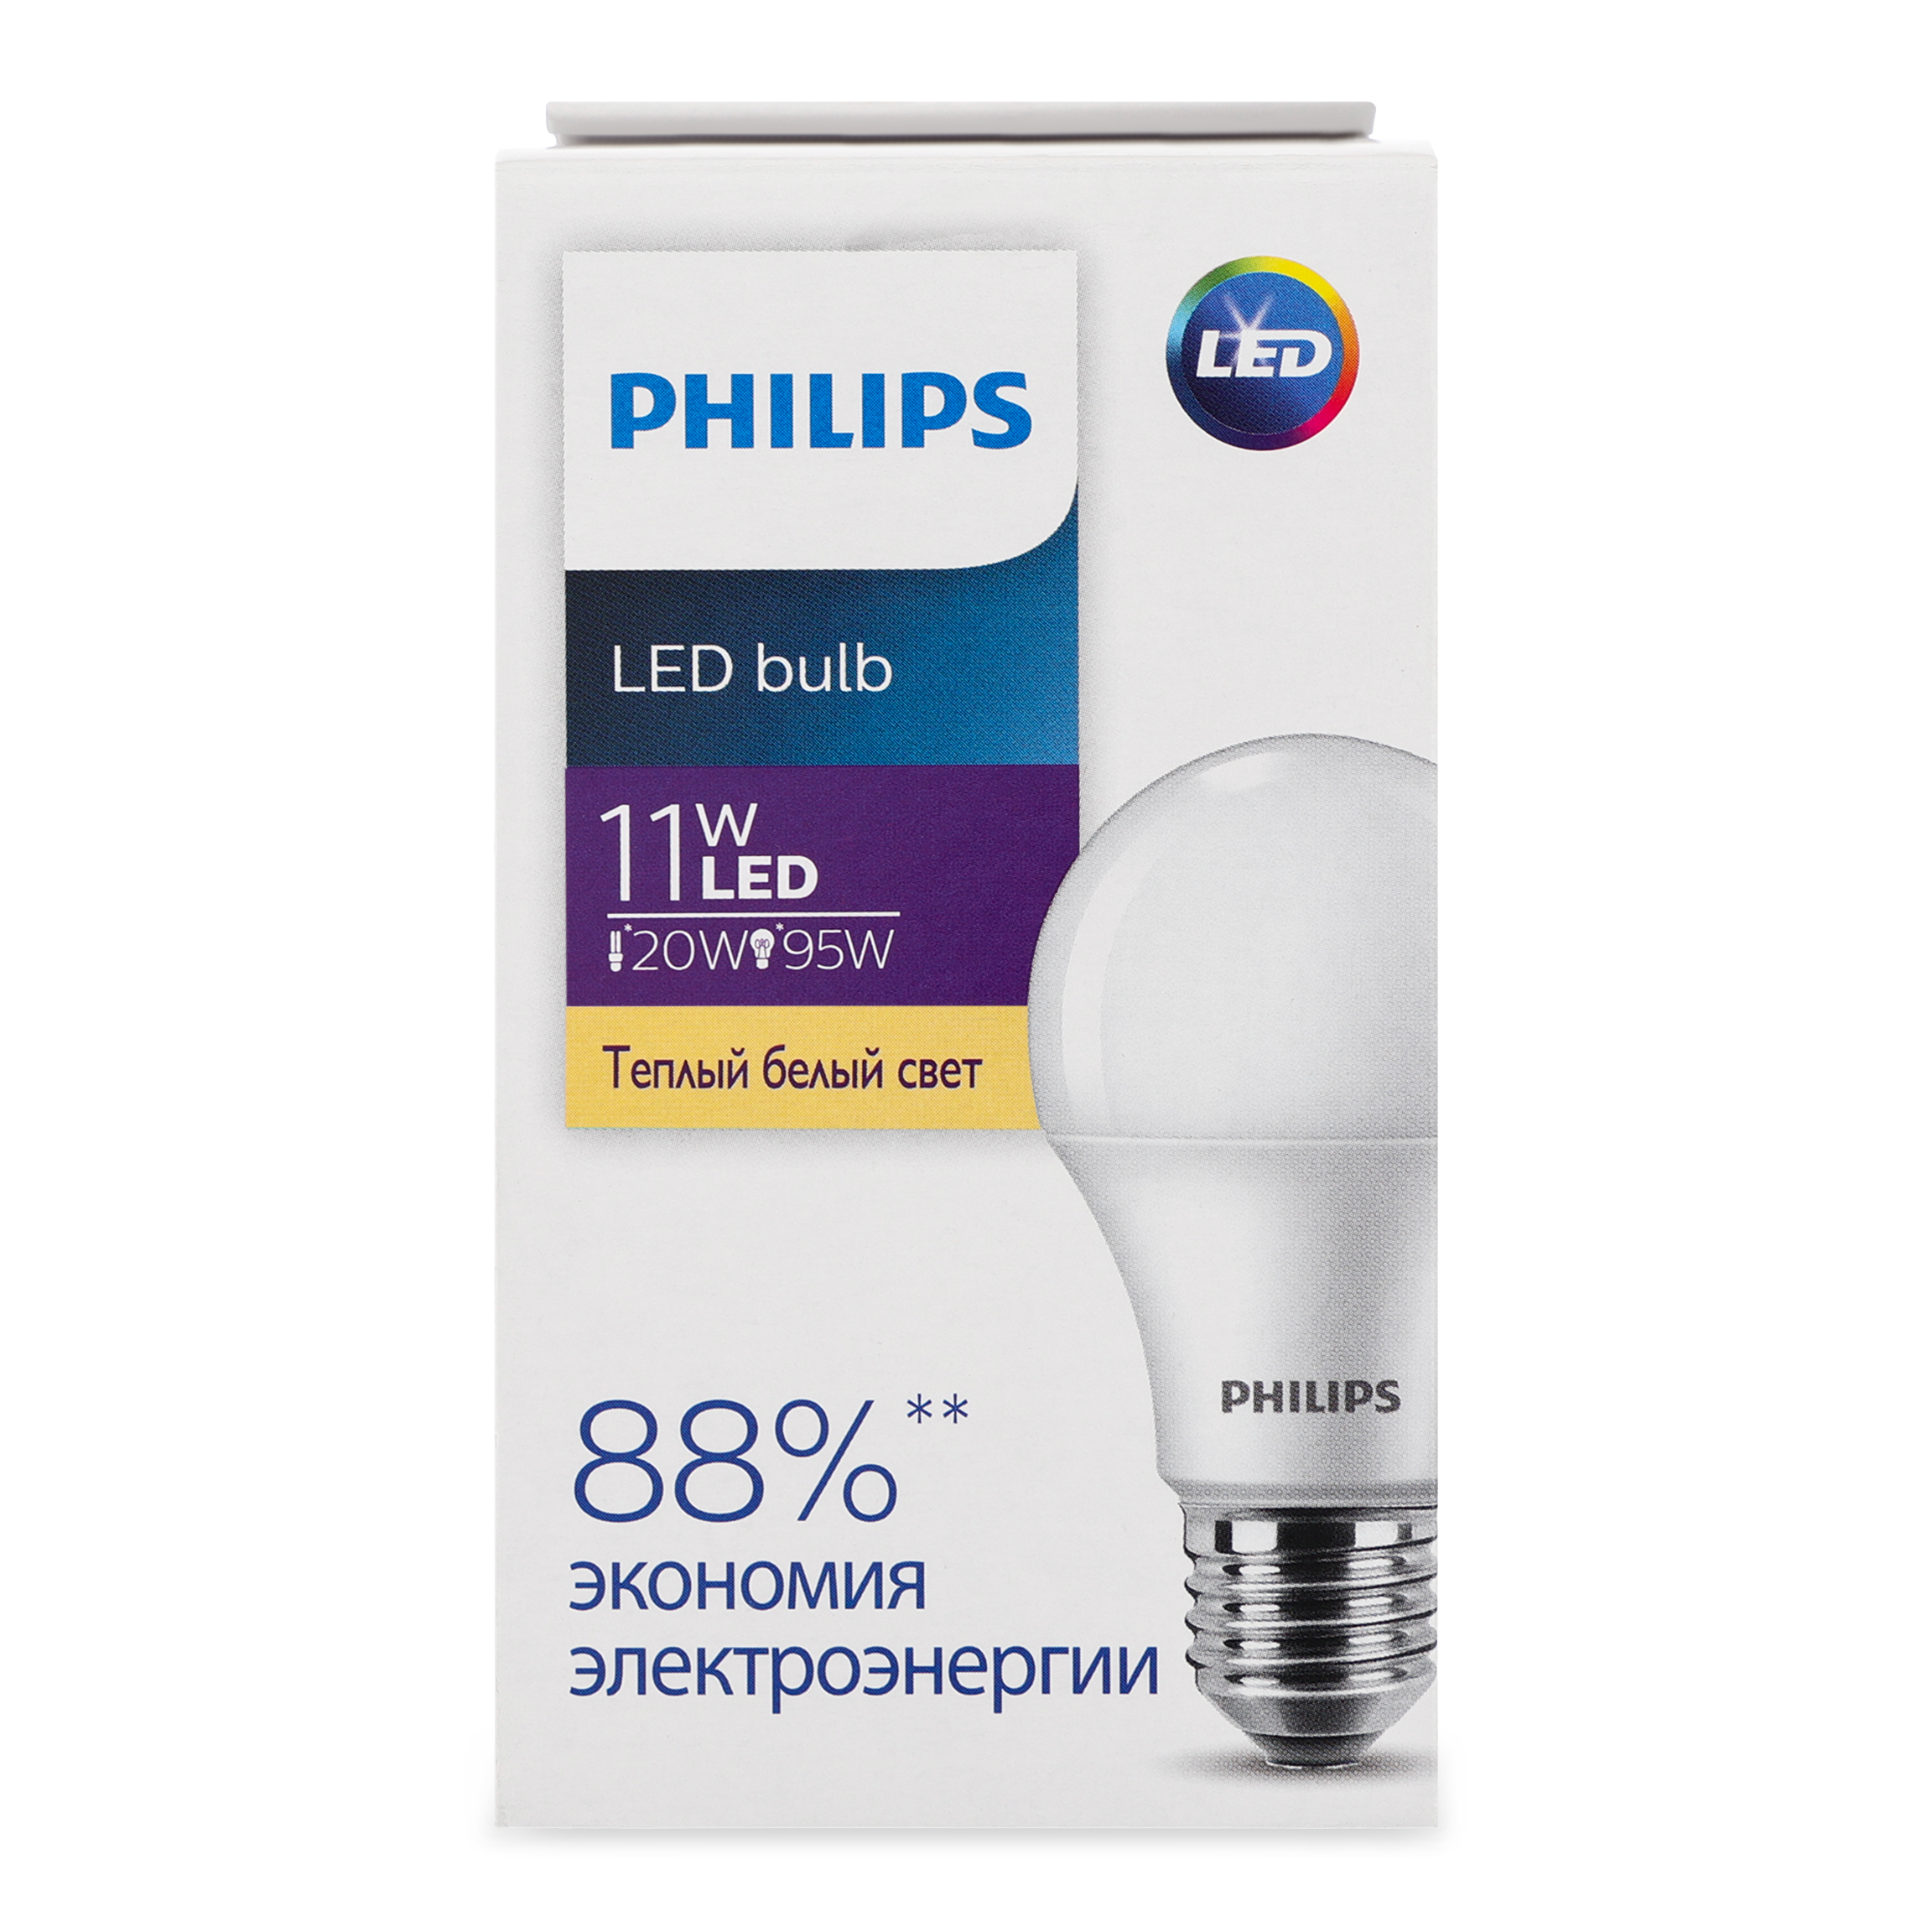 Philips Ecohome Led Bulb Lamp 11W E27 3000K 1PF/20RCA